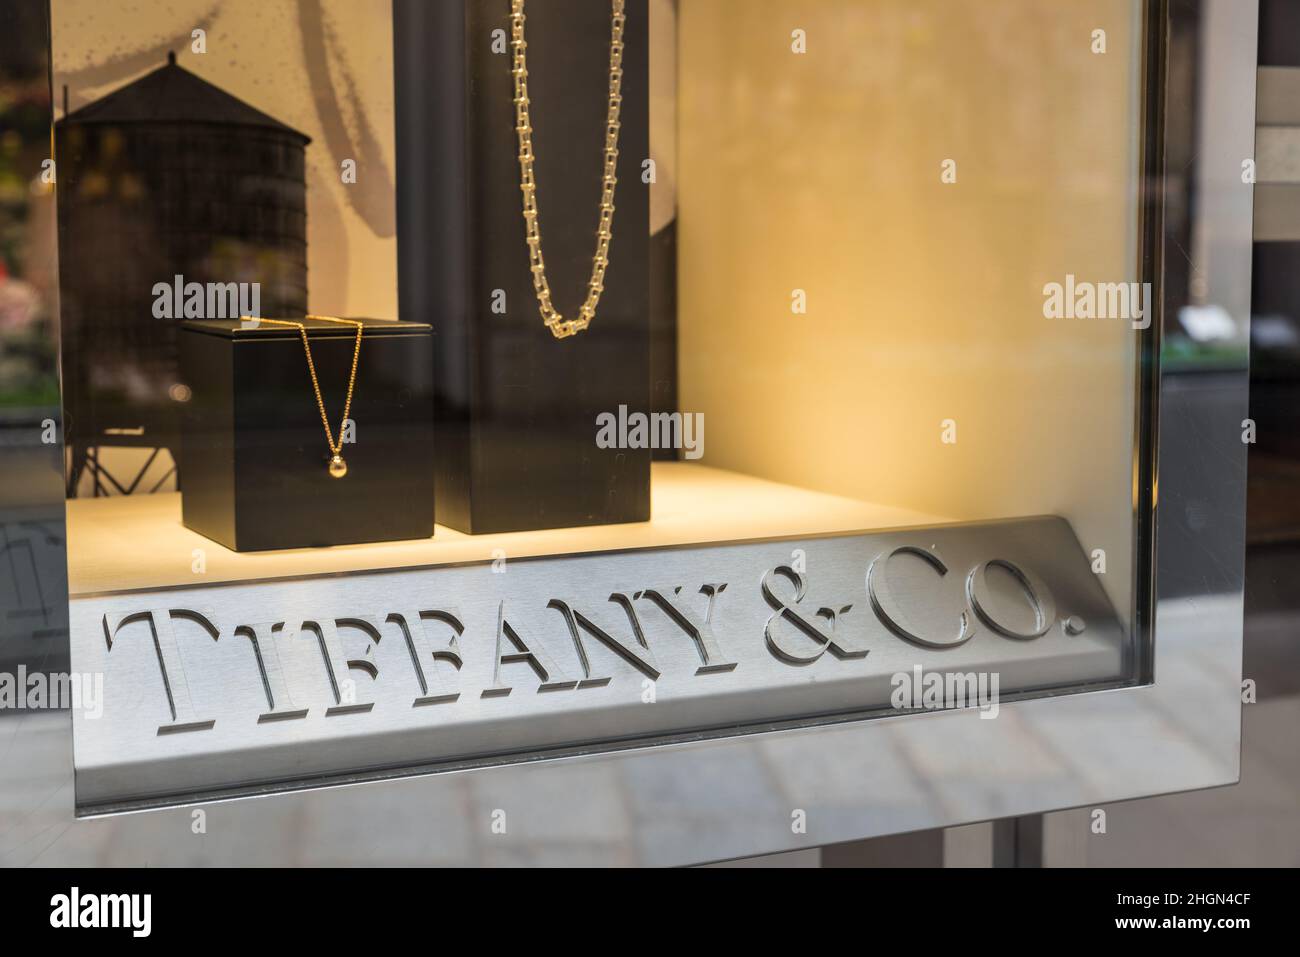 Tienda Tiffany & Co (Tiffany's) en una zona exclusiva de la ciudad de Milán. Símbolo y concepto de lujo, compras, calidad y hecho en Estados Unidos de América Foto de stock